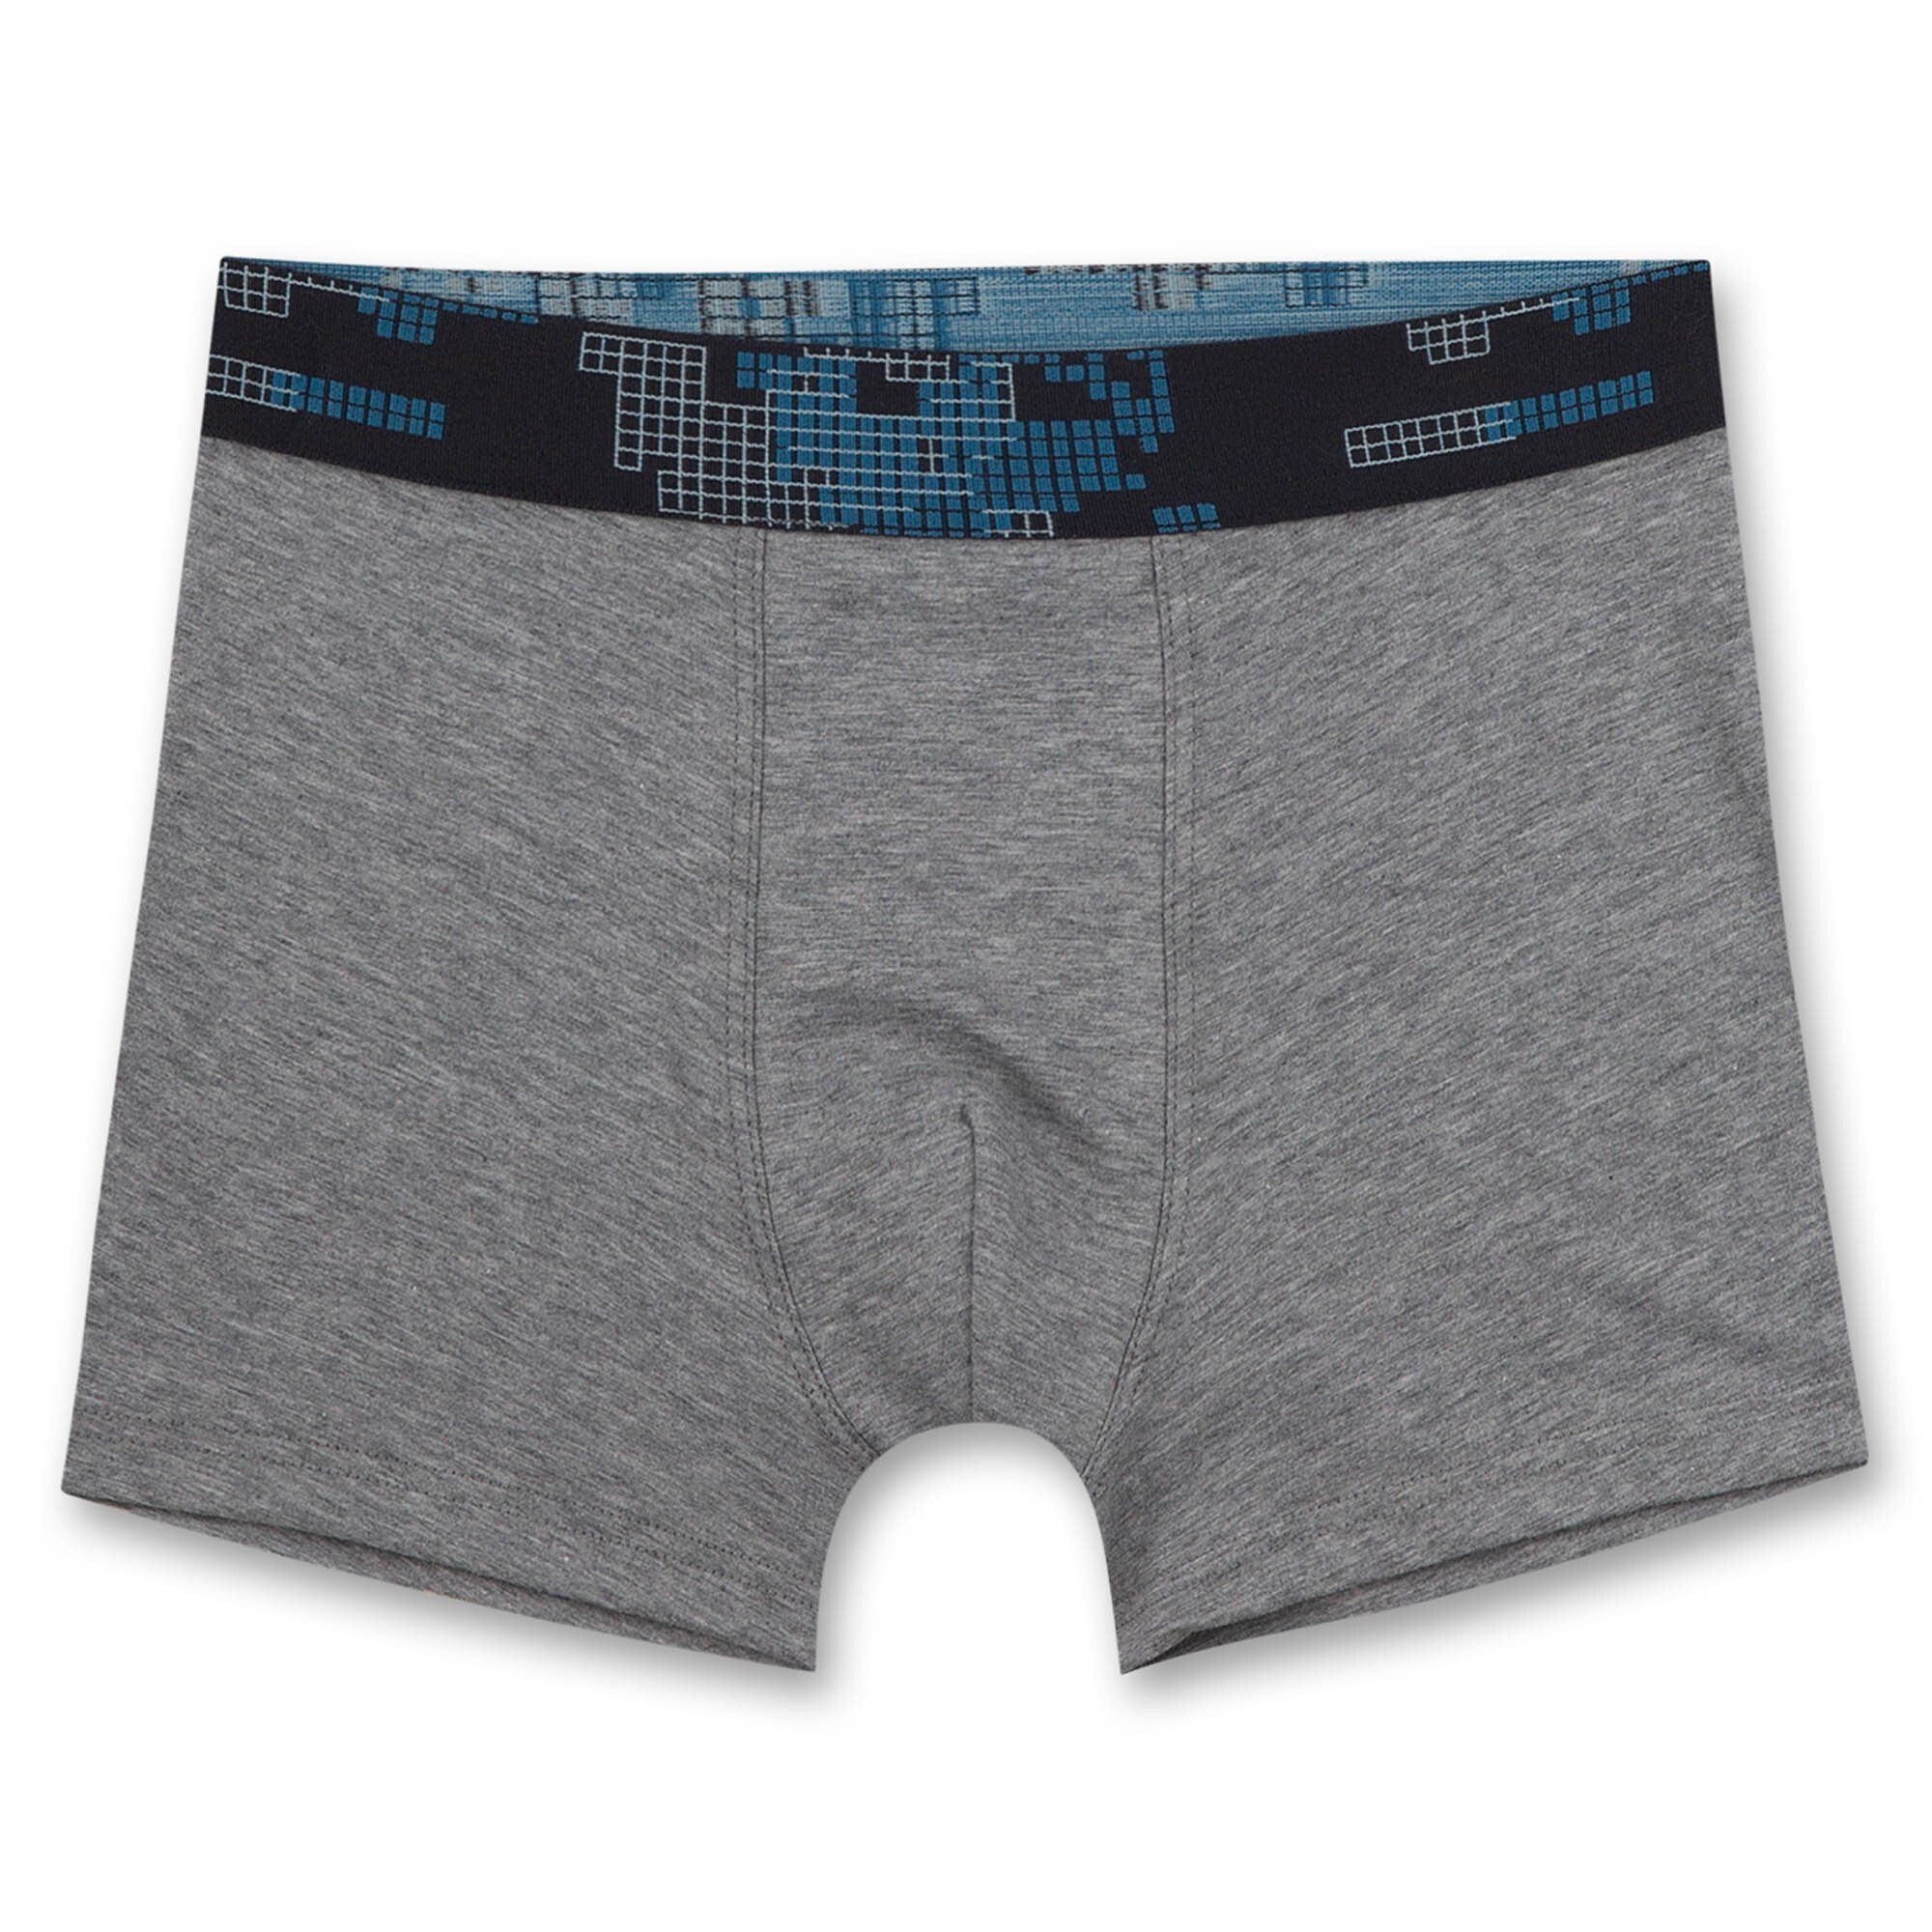 5er Jungen Shorts Pack, Pants, Boxer - Unterhose Sanetta